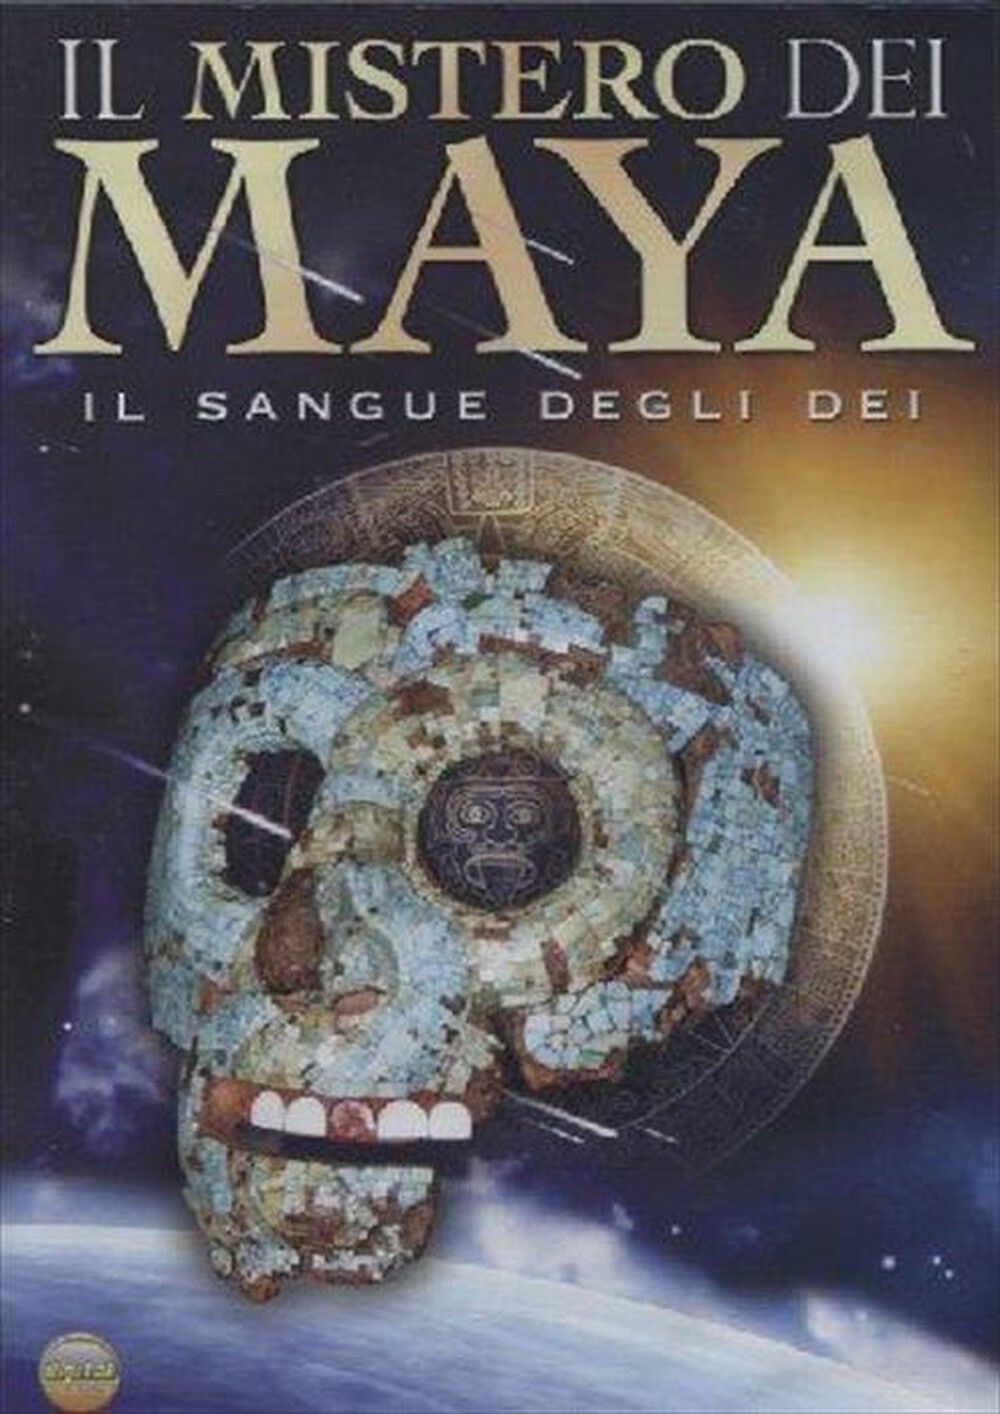 "CINEHOLLYWOOD - Mistero Dei Maya (Il) - Il Sangue Degli Dei"